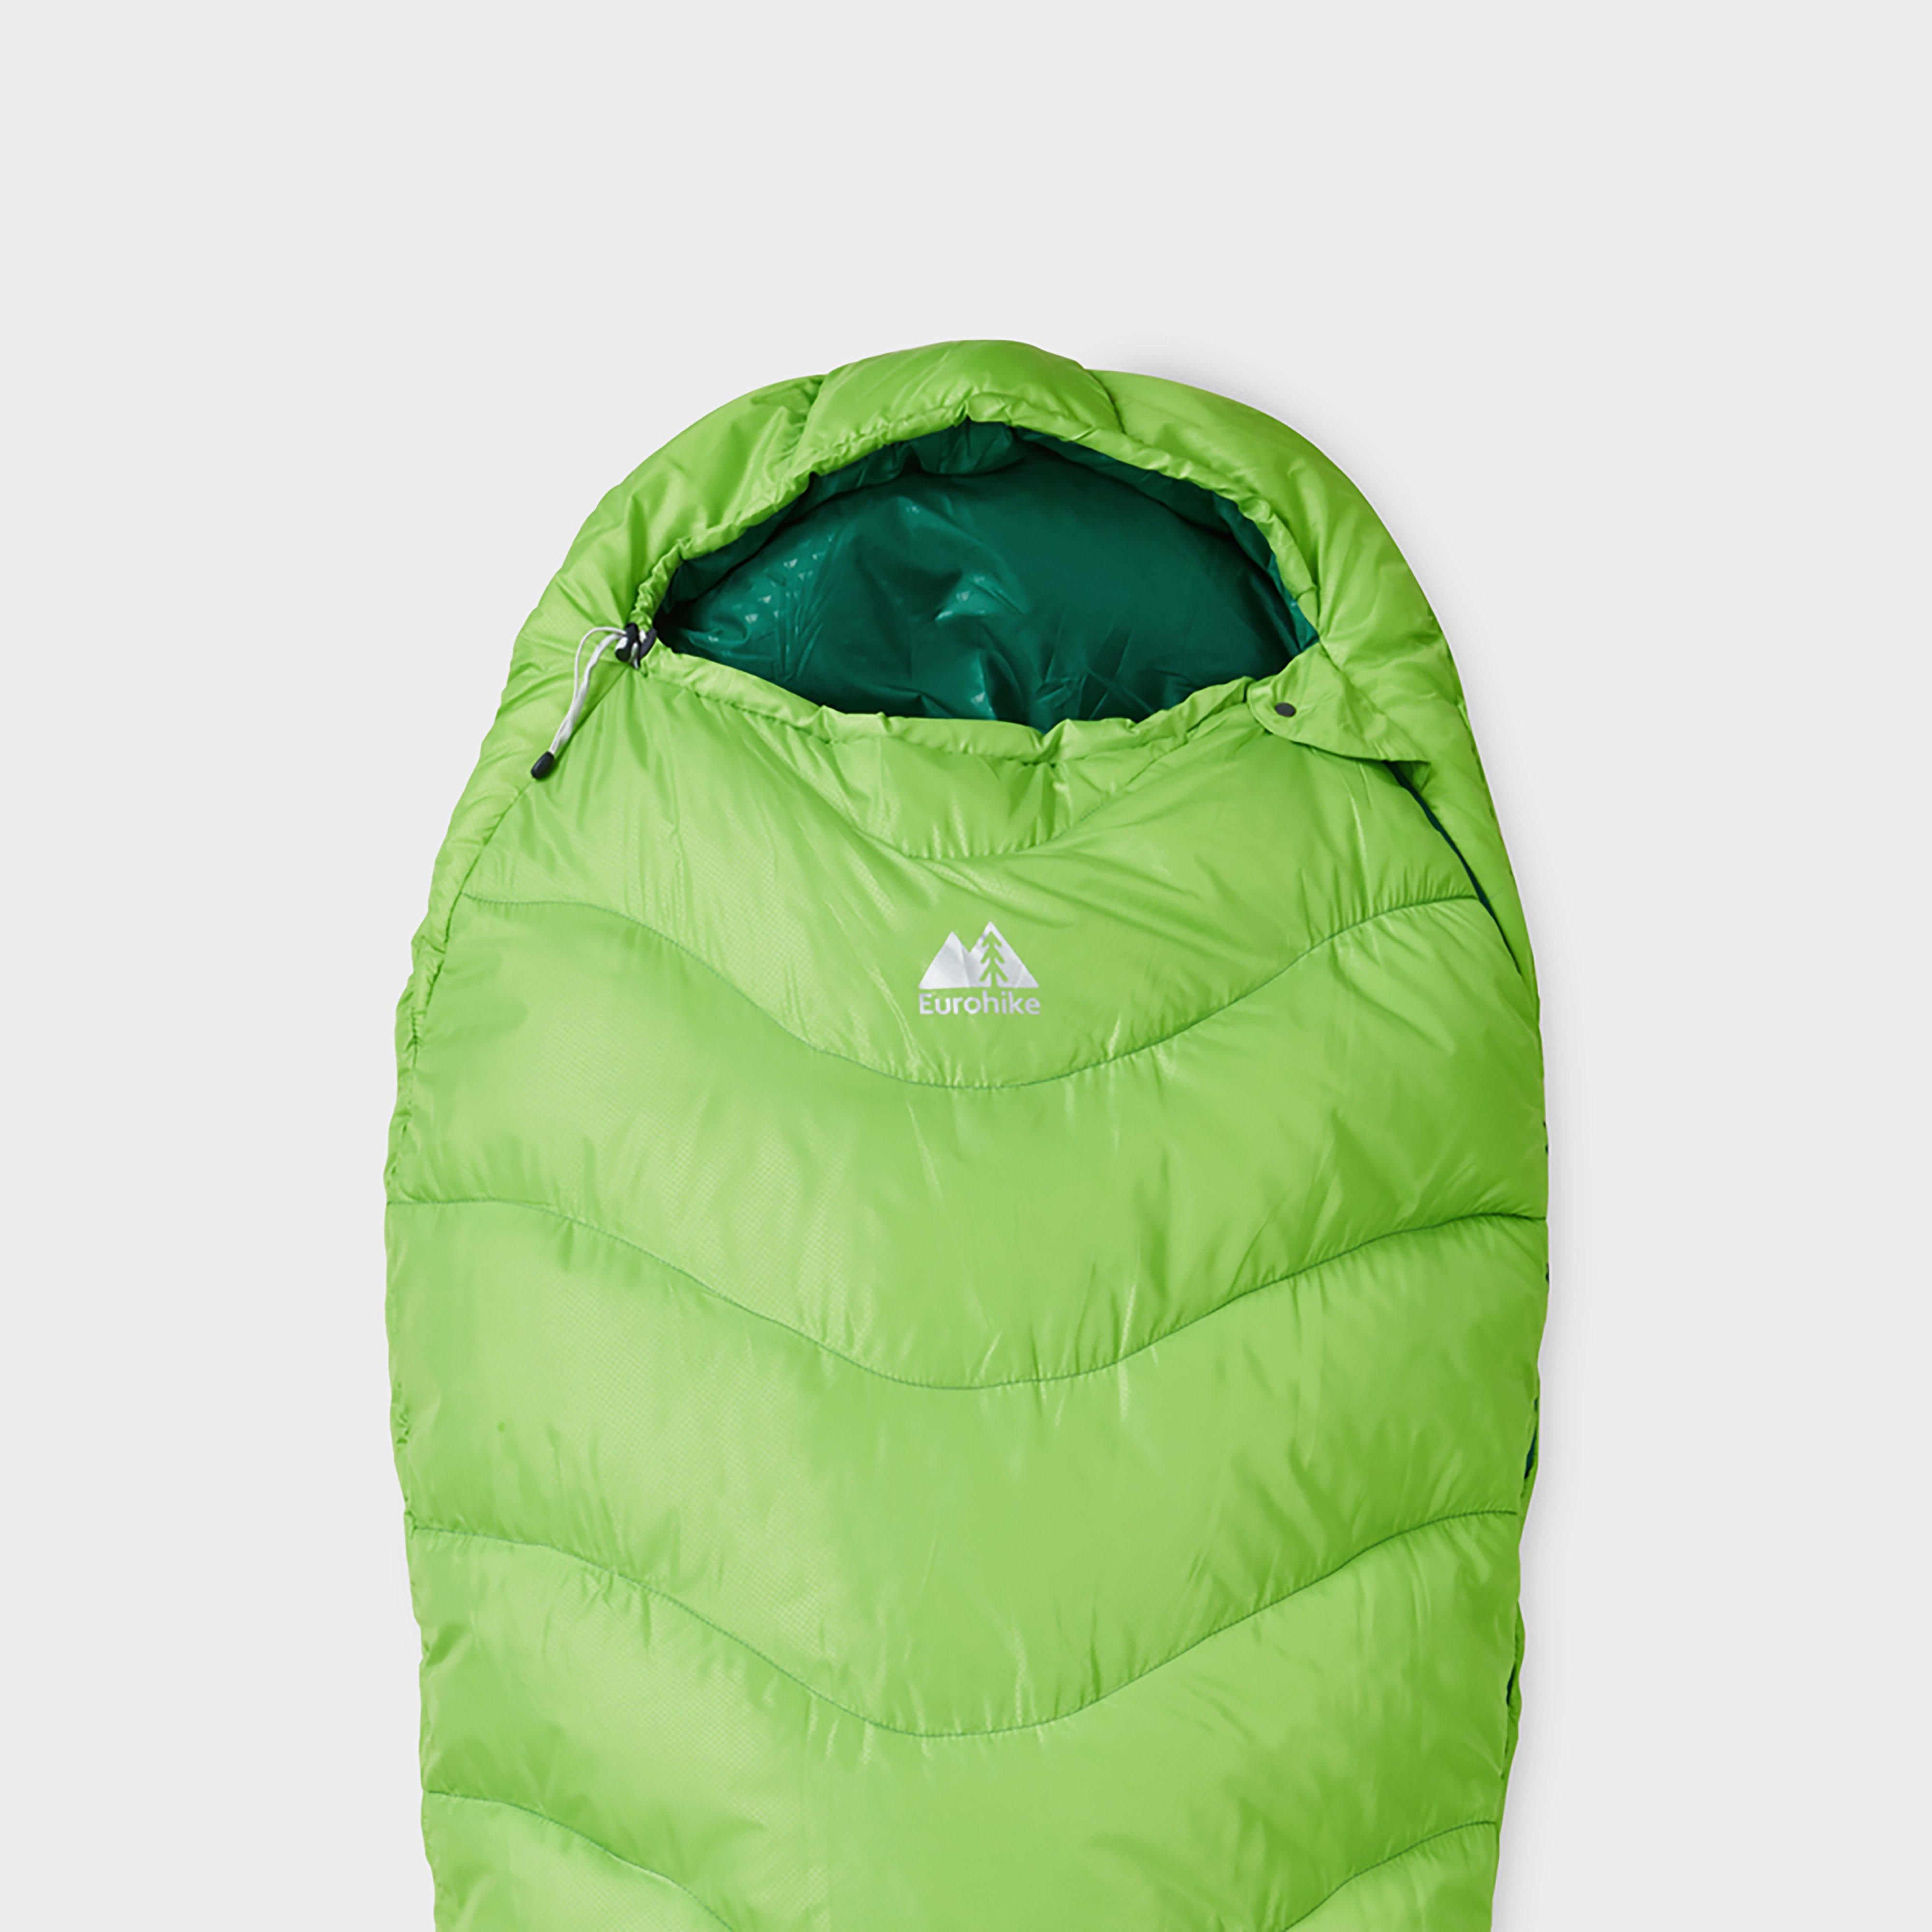 Eurohike Adventurer 300 Sleeping Bag - Green  Green